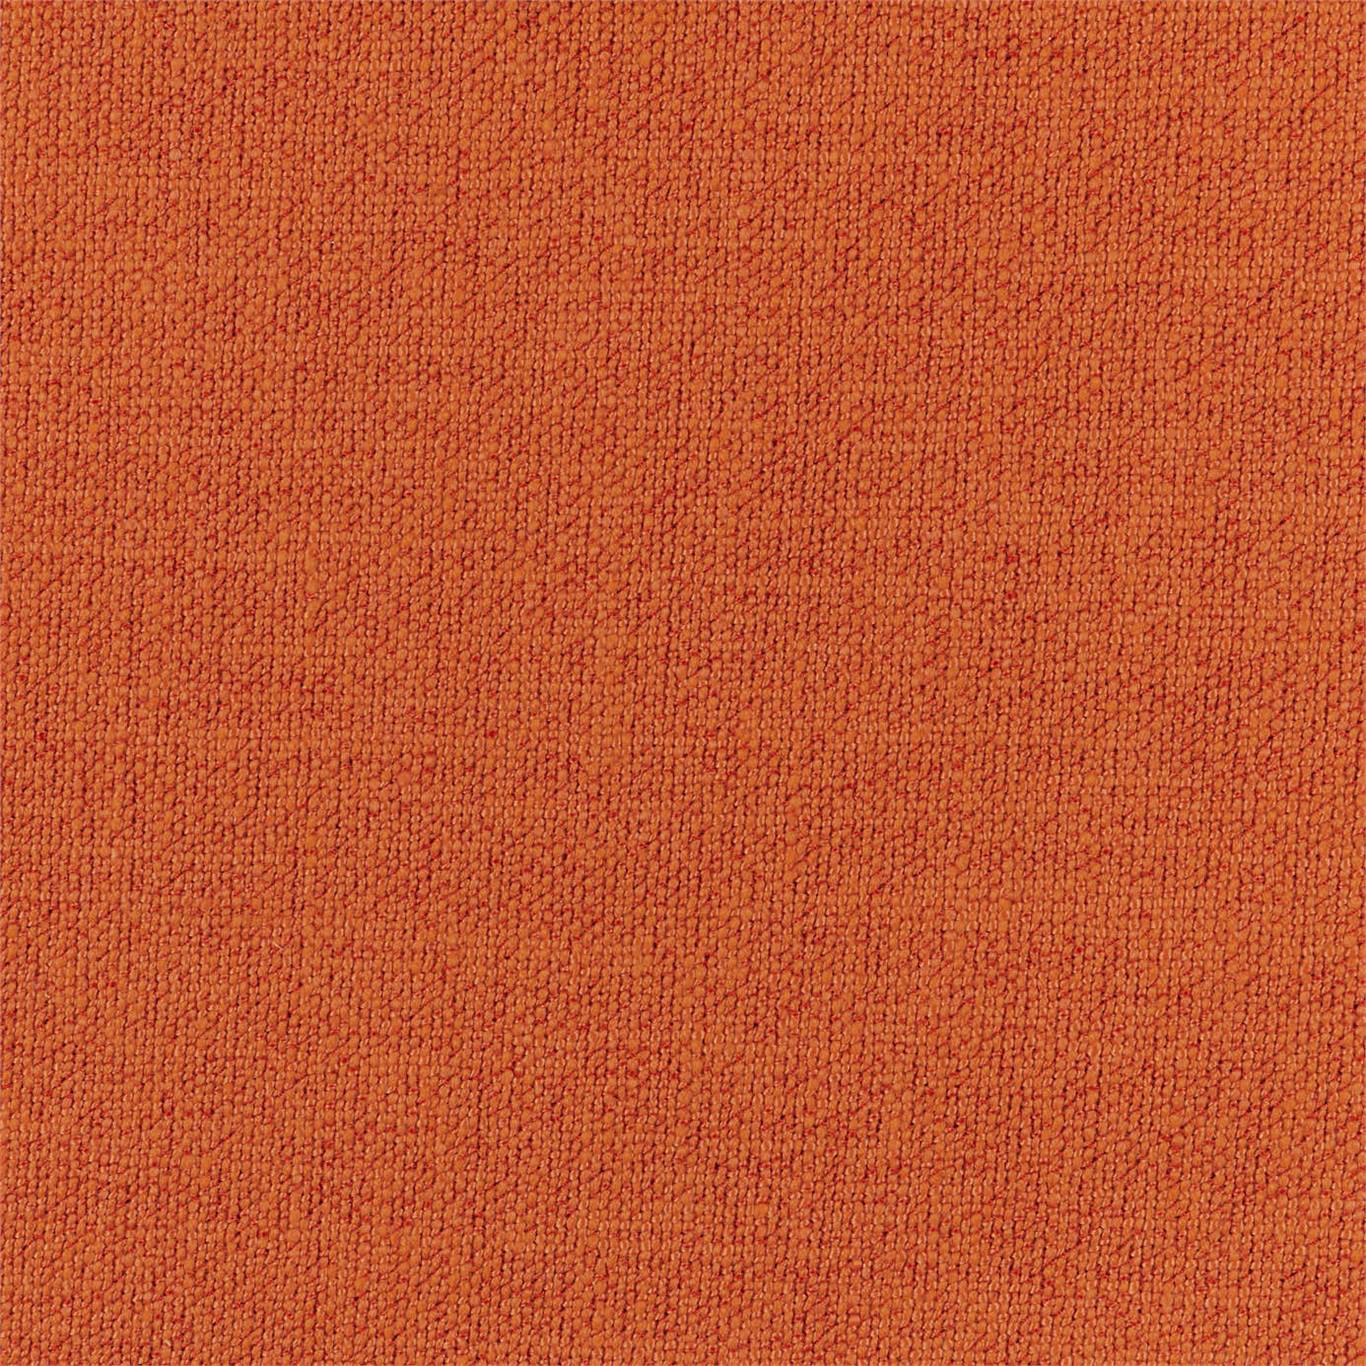 Subject Mandarin Fabric by HAR